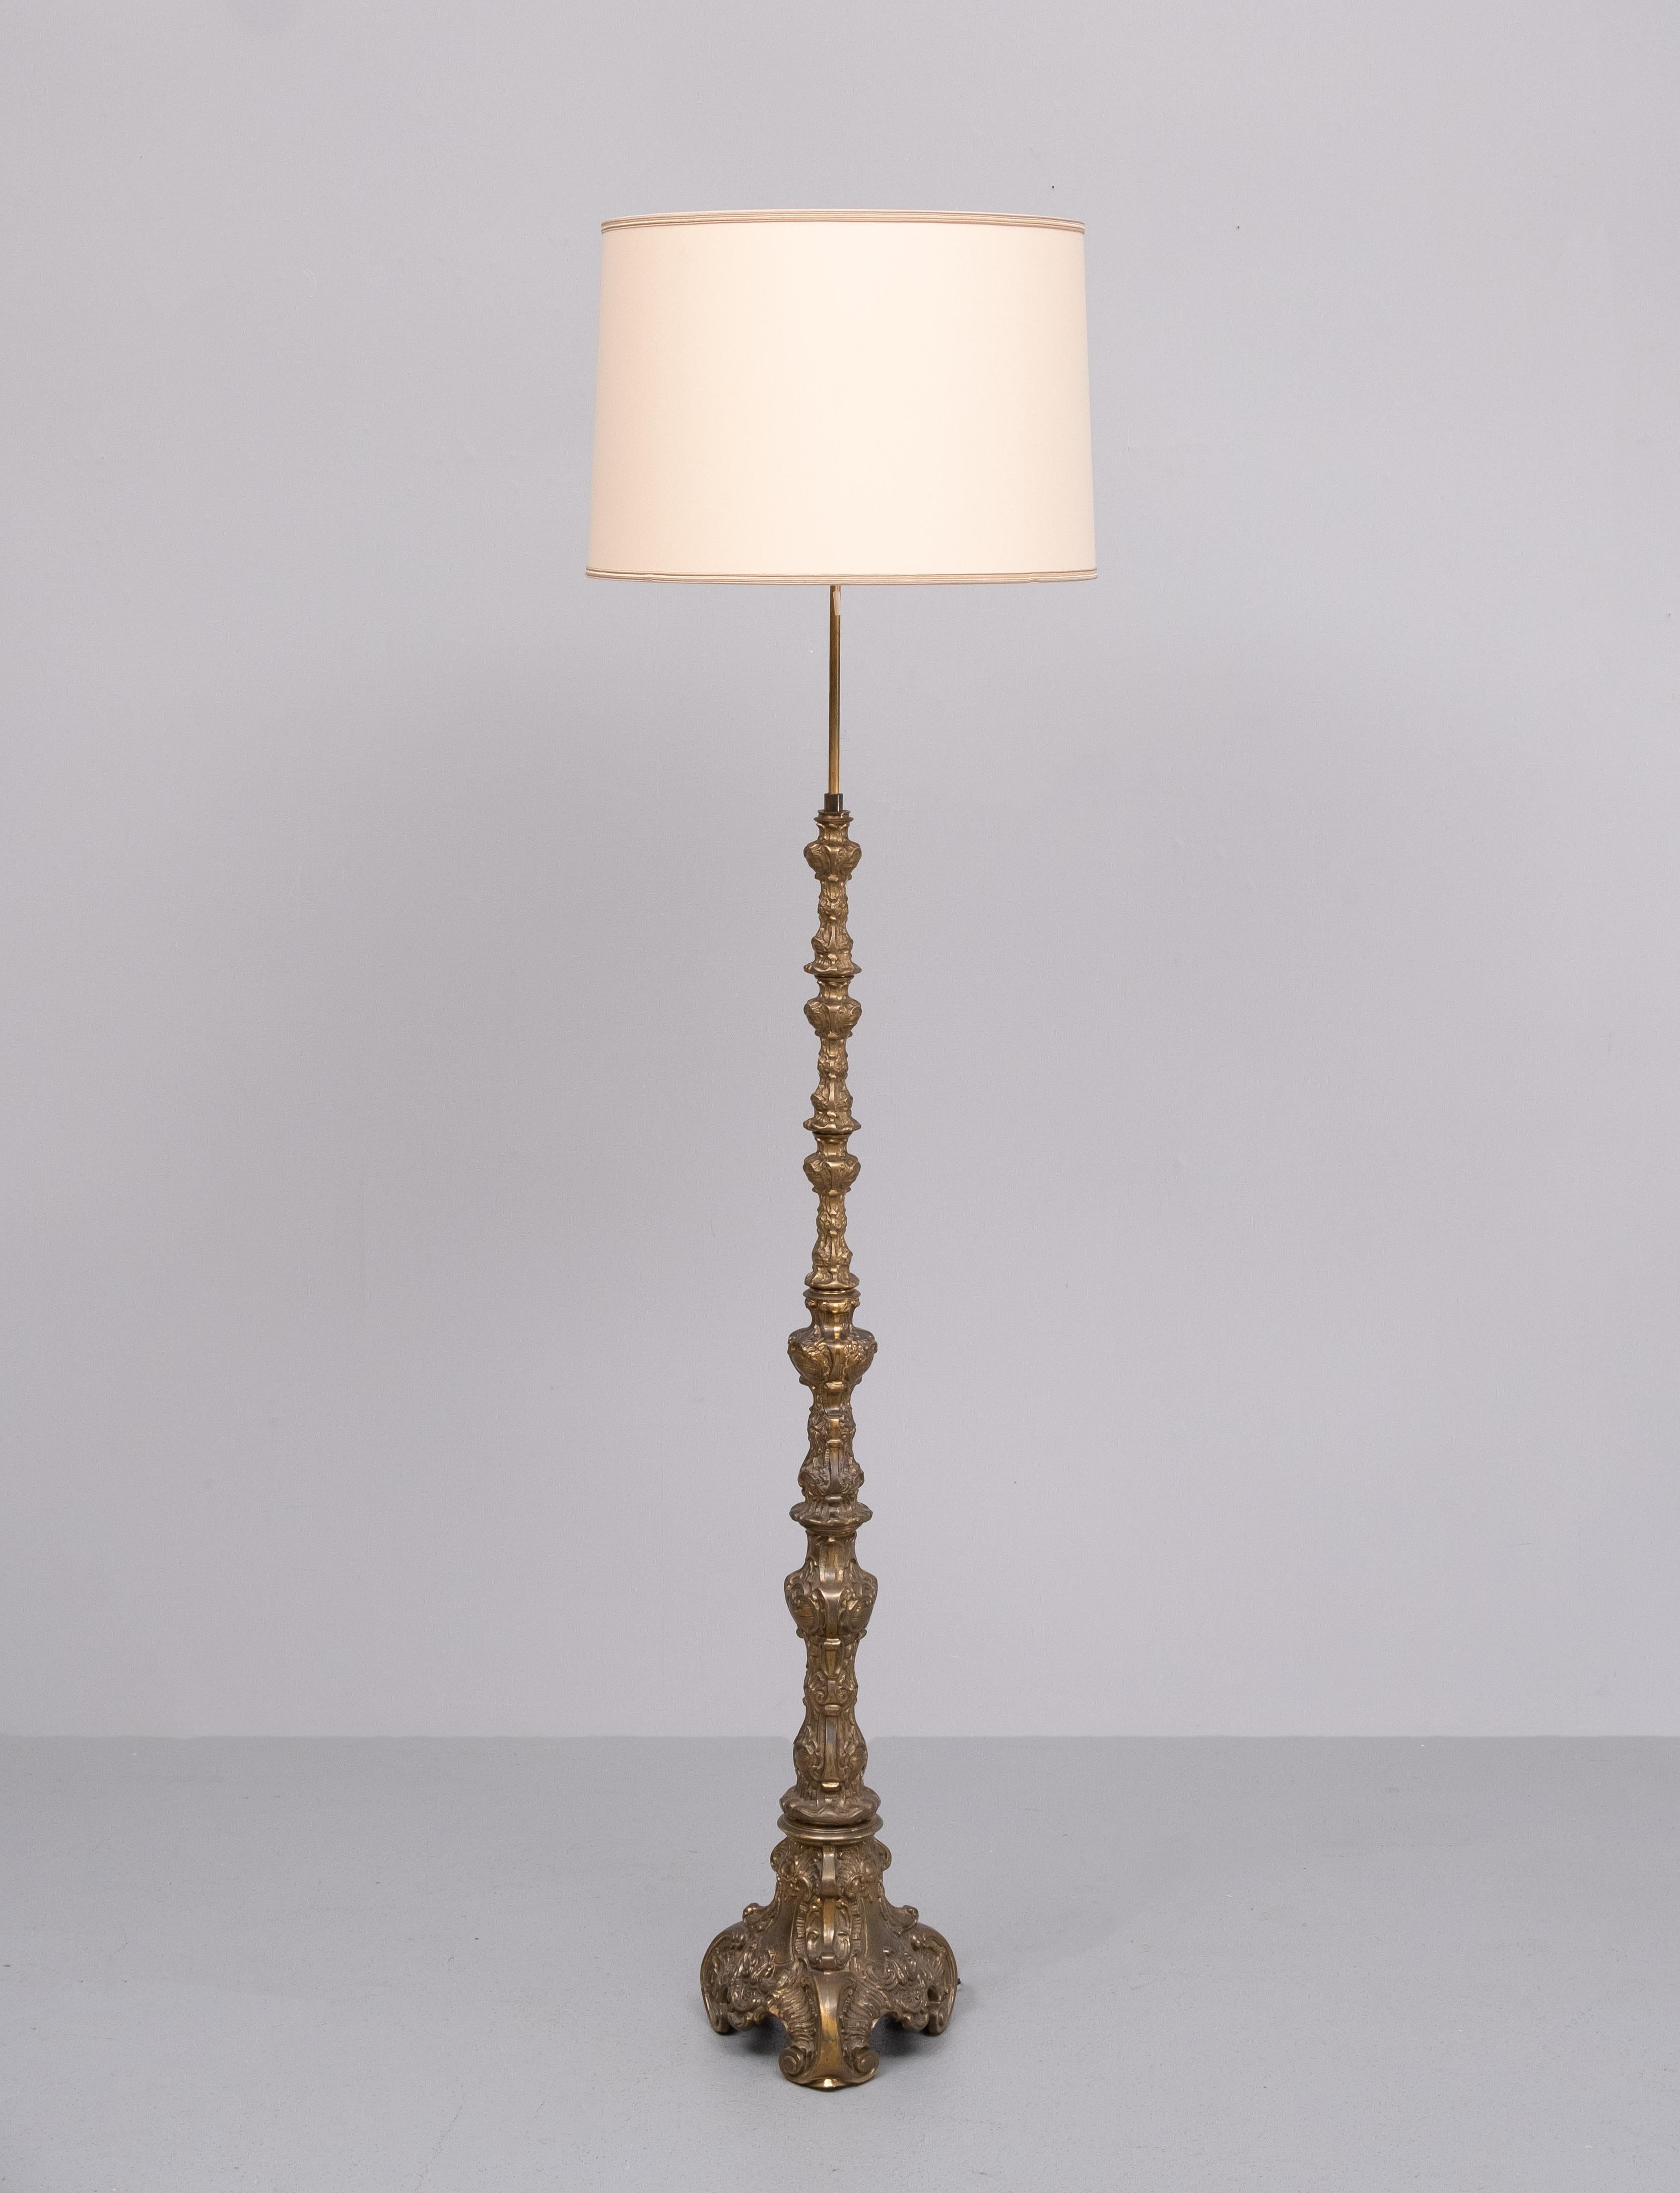 Très beau pied de lampe en laiton massif. Dans un baroque  style .
Cette lampe est très agréable à utiliser. 2 grandes ampoules E27 sont nécessaires.
Pièce lourde .  